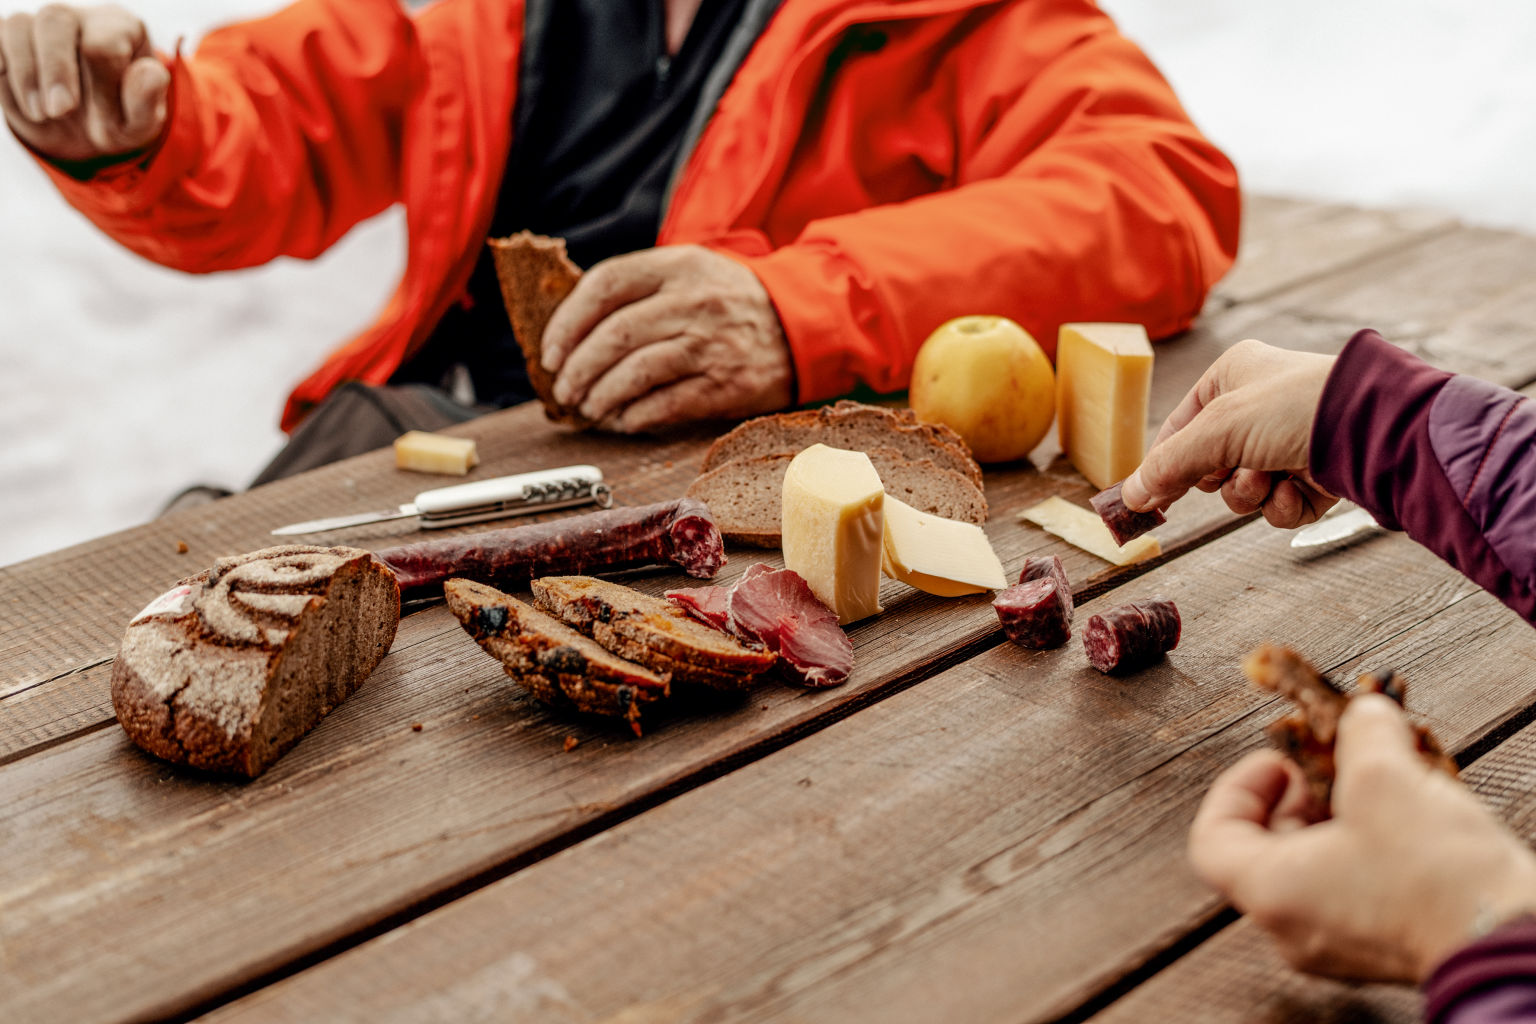 Mutet nach einfacher Mahlzeit an, schmeckt aber fürstlich: Ein Picknick mit Walliser Spezialitäten, Wallis, Schweiz